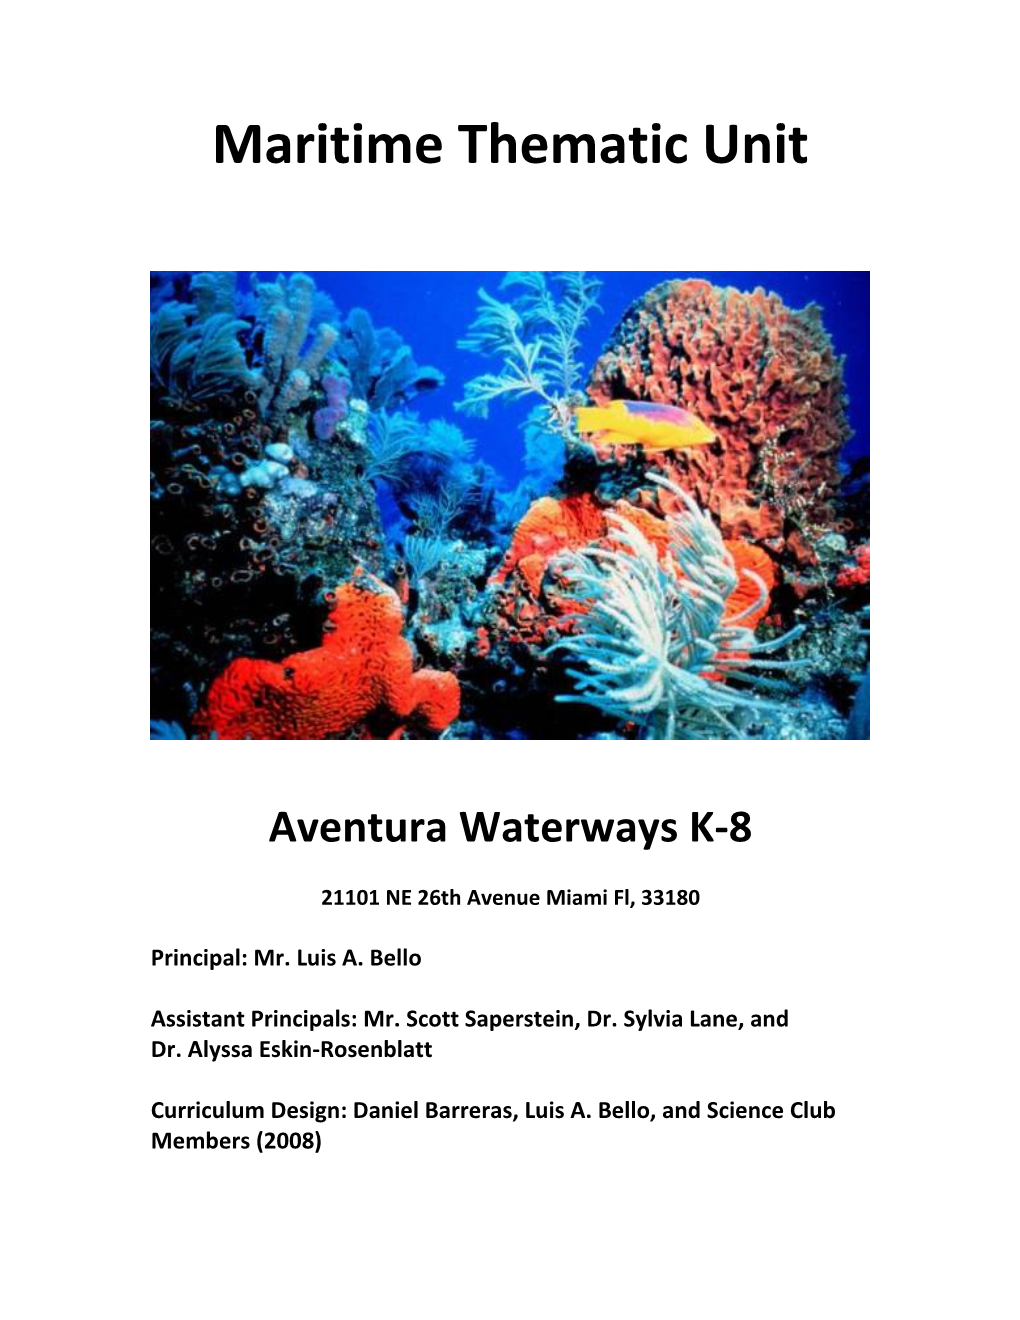 Aventura Waterways K-8